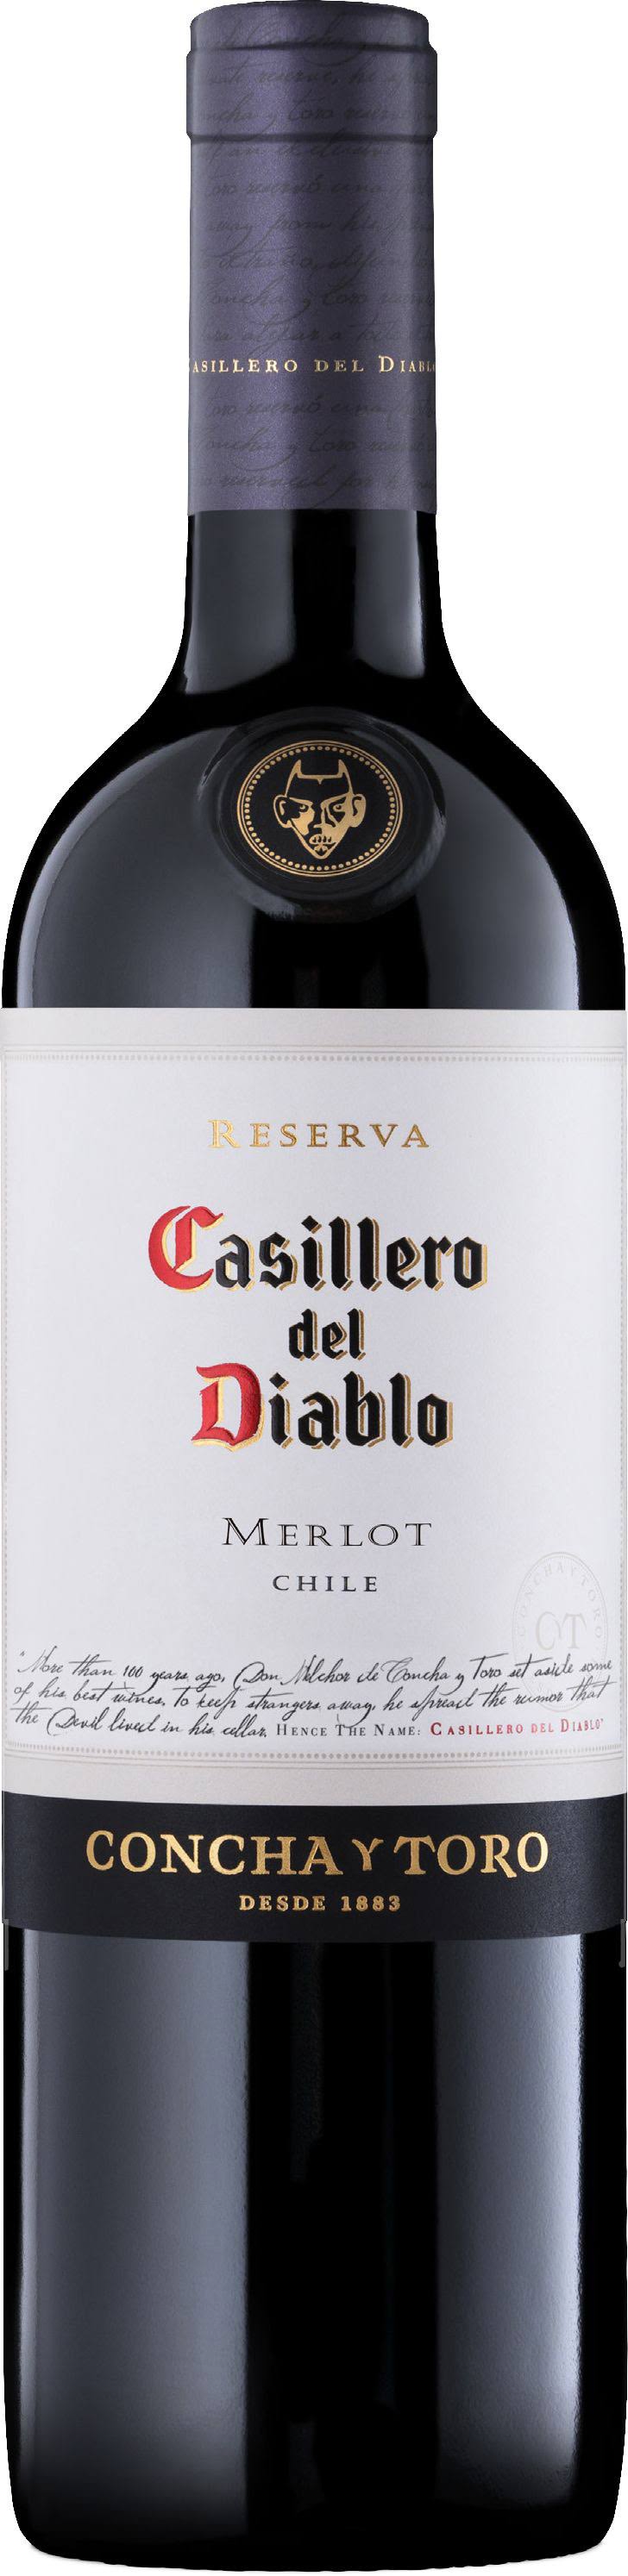 Casillero Del Diablo Merlot, Chile (Vintage Varies) - 750 ml bottle